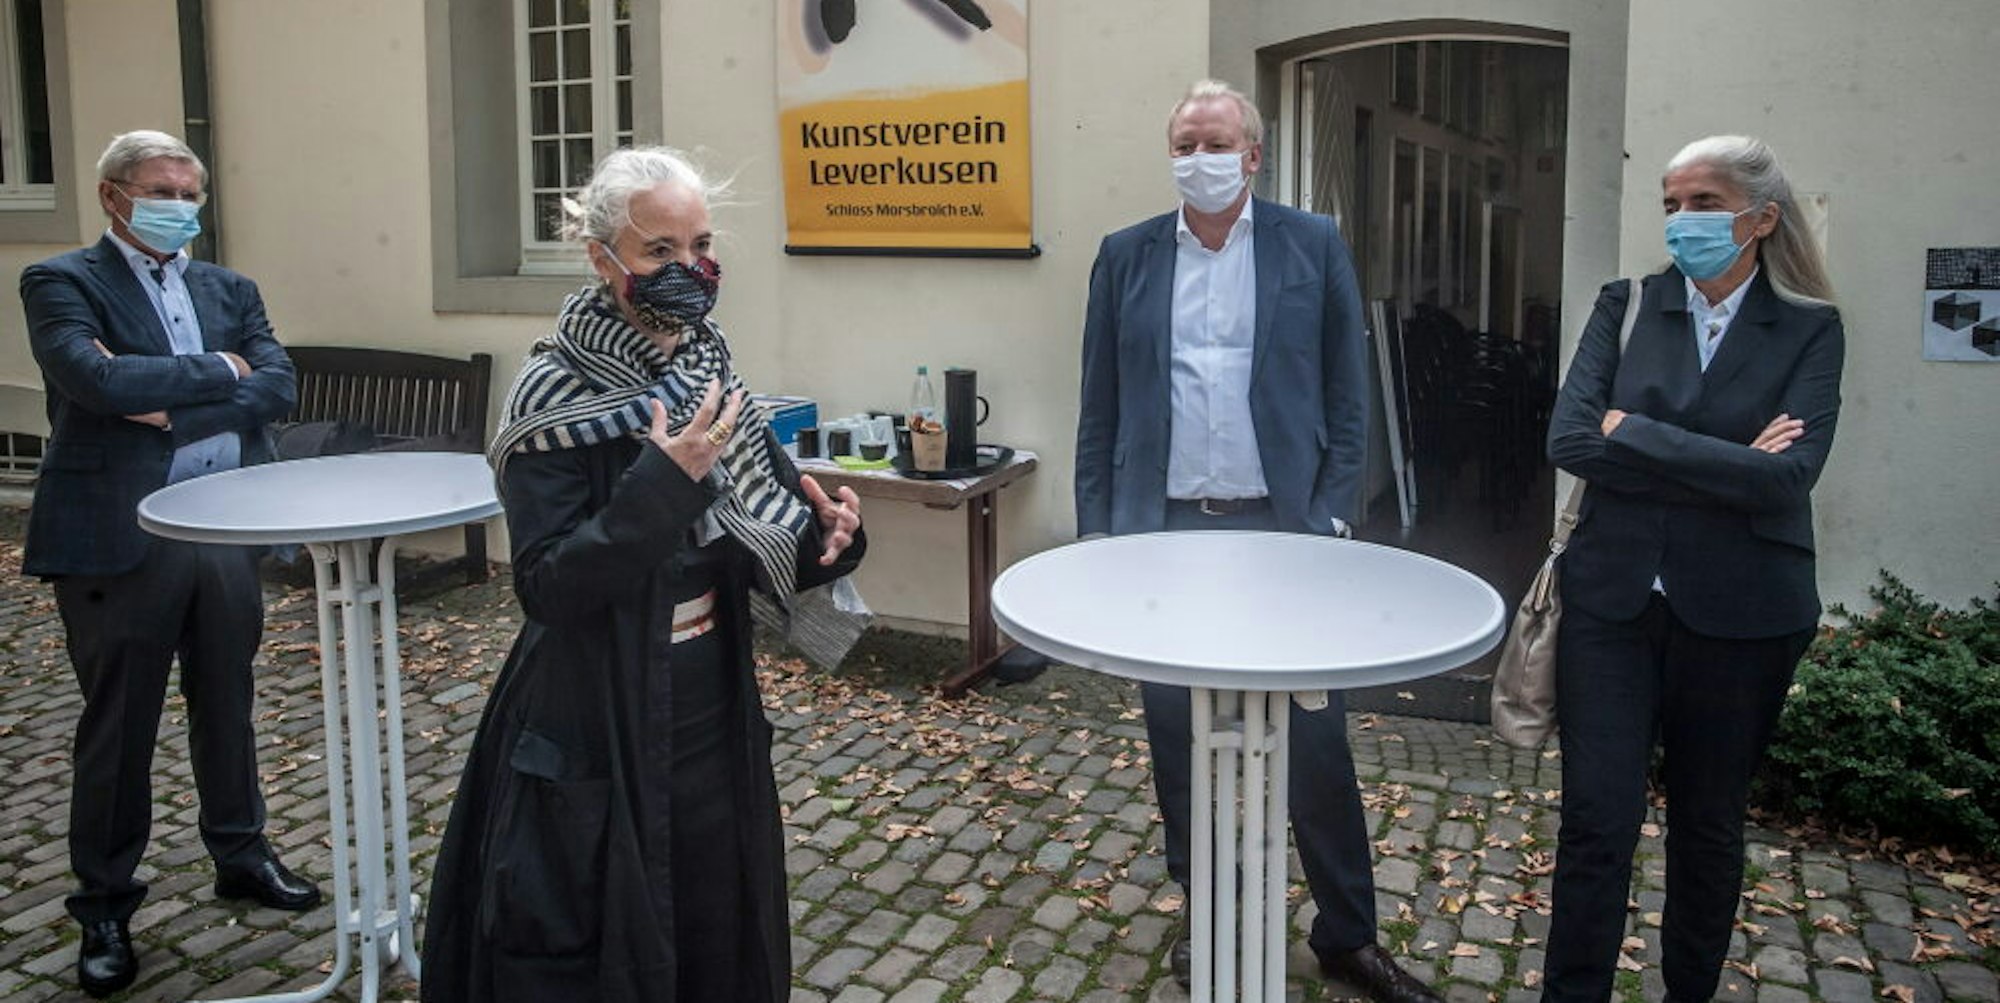 Kulturdebatte vor Kunstverein und Schloss: Ministerin Isabel Pfeiffer-Poensgen, OB-Kandidat Frank Schönberger (CDU), Susanne Wedewer-Pampus, Gottfried Zaby (von rechts).